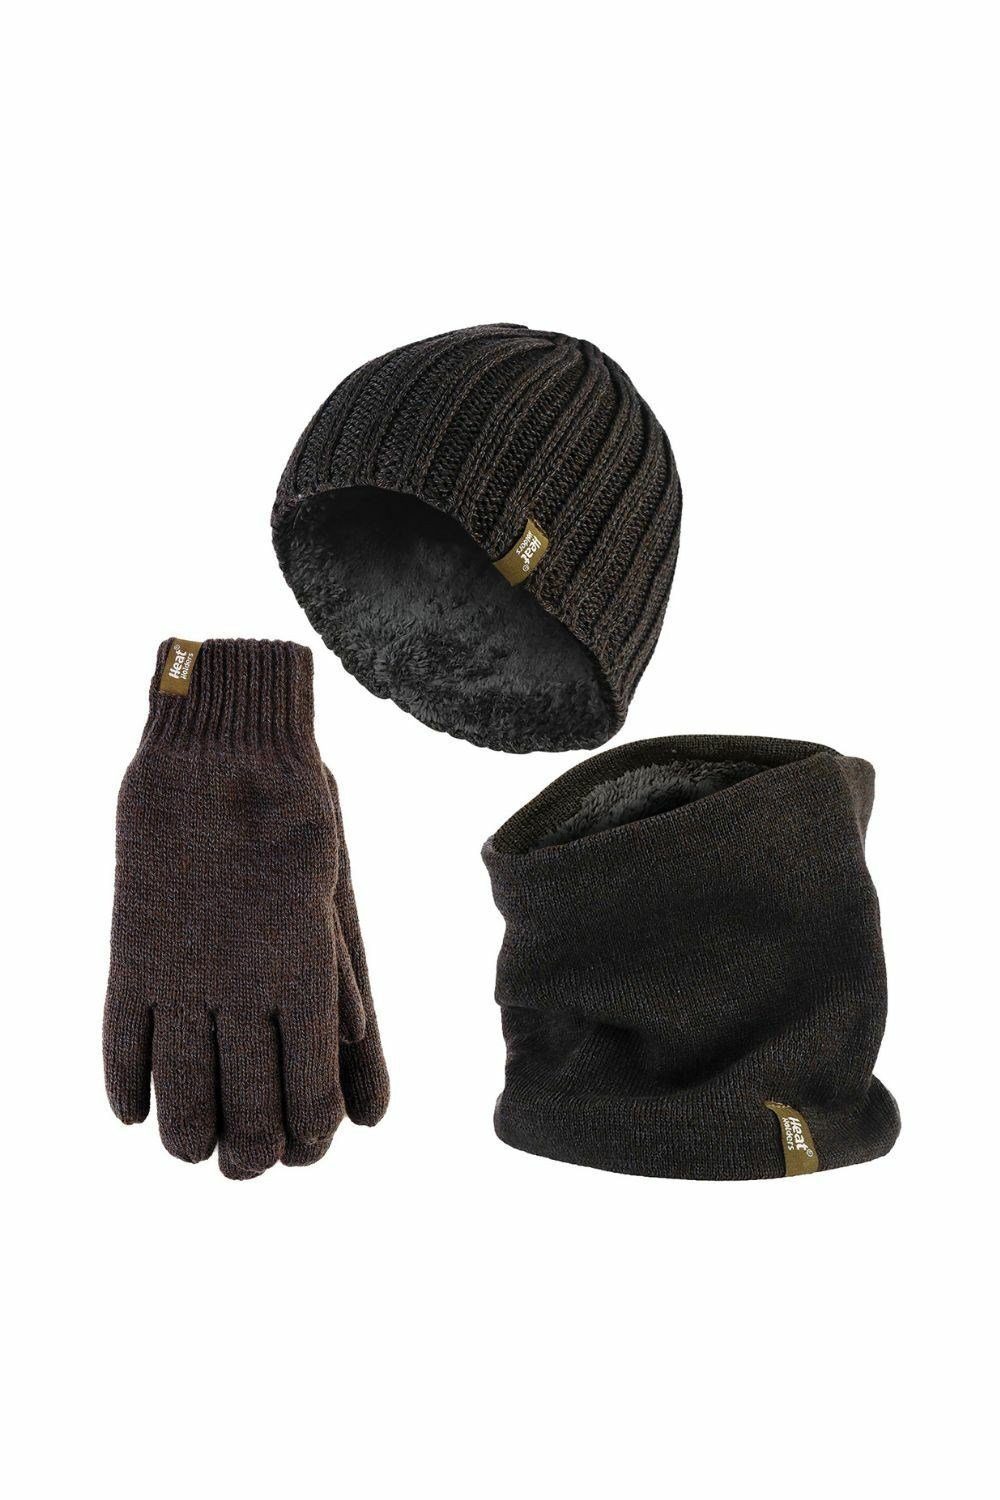 Men's Waterproof Hat & Glove Set - Black